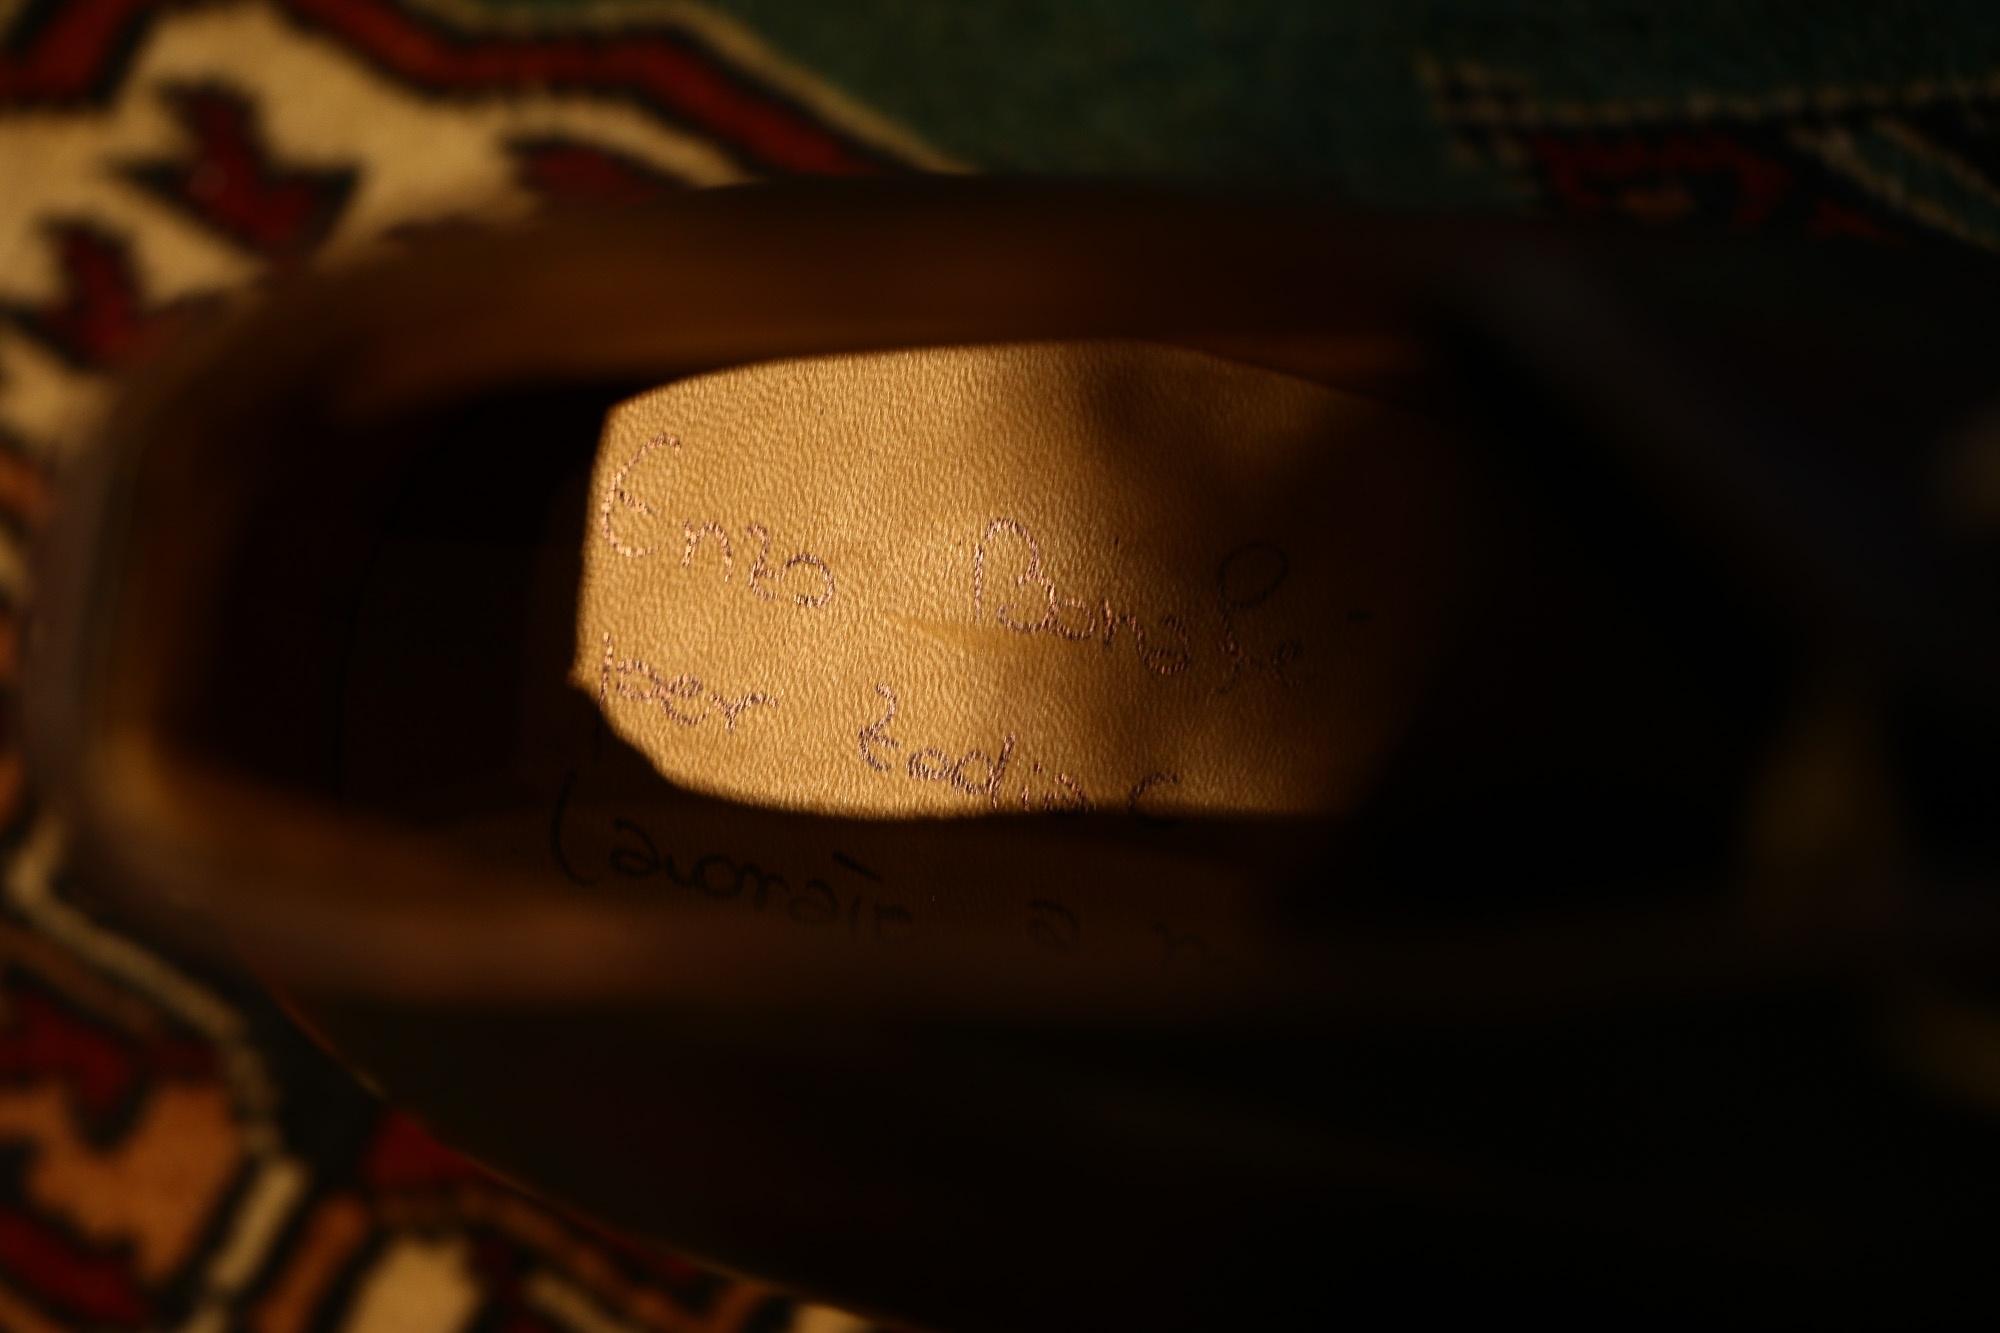 ENZO BONAFE (エンツォボナフェ) 【ART.3722】 Chukka boots チャッカブーツ Horween Shell Cordovan Leather ホーウィン社 シェルコードバンレザー ノルベジェーゼ製法 チャッカブーツ コードバンブーツ No.8(バーガンディー)  made in italy (イタリア製) 2017 秋冬新作 愛知 名古屋 Alto e Diritto アルト エ デリット エンツォボナフェ コードバン チャッカ　5.5,6,6.5,7,7.5,8,8.5,9,9.5